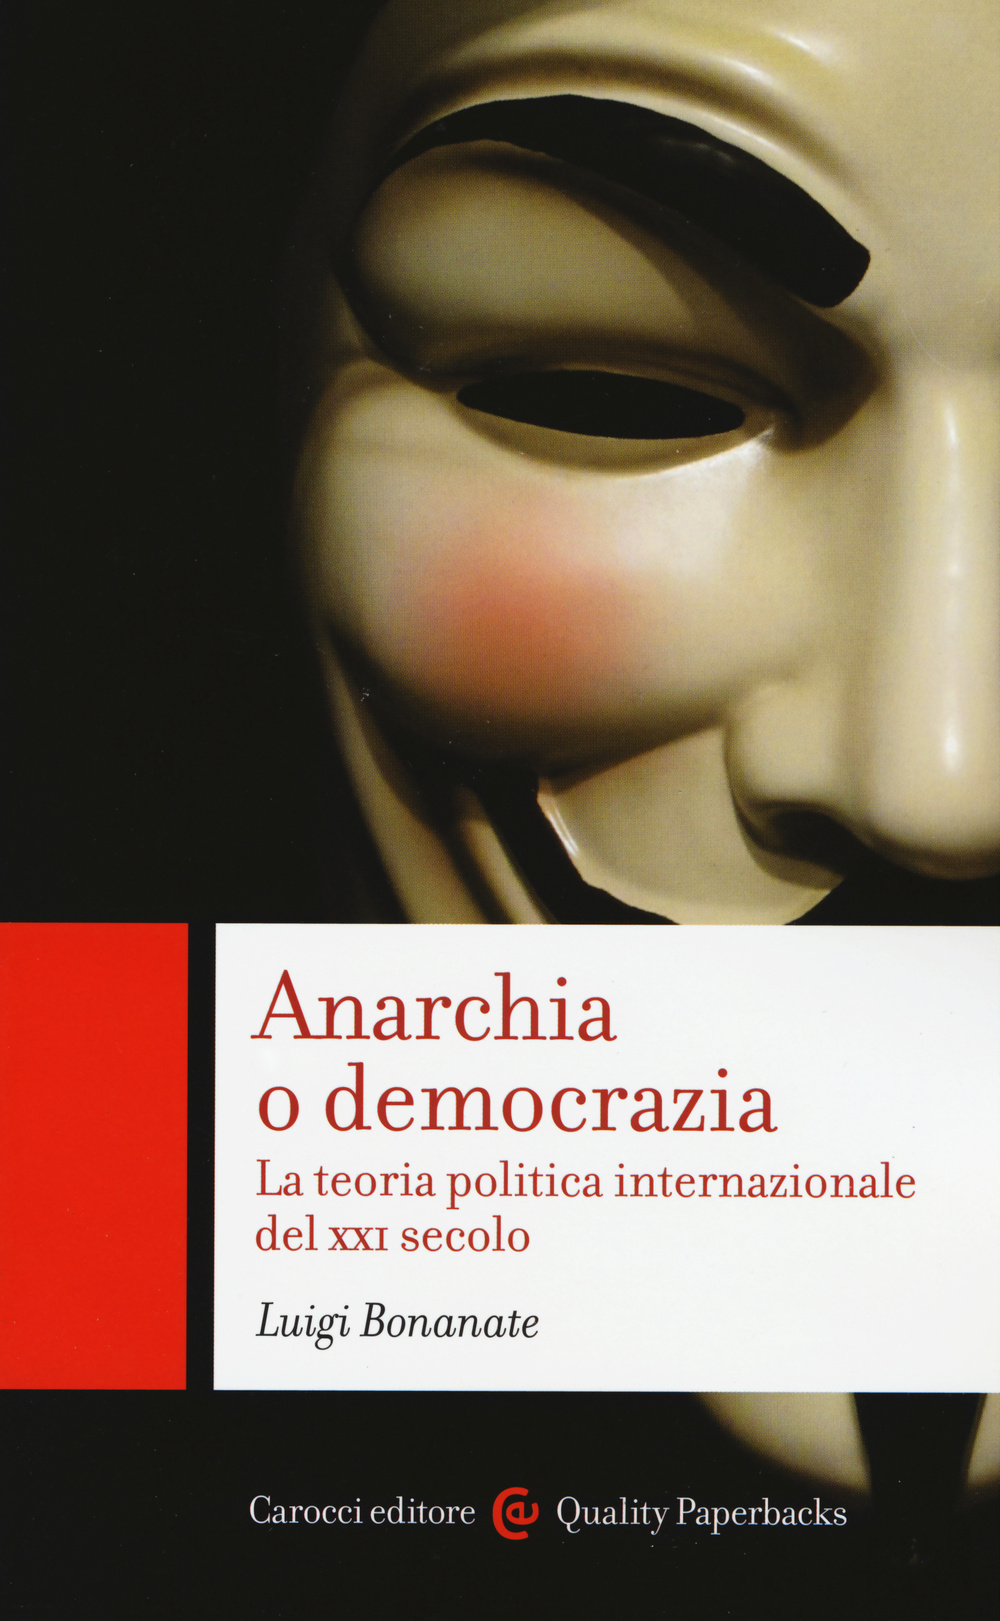 Anarchia o democrazia. La teoria politica internazionale del XXI secolo